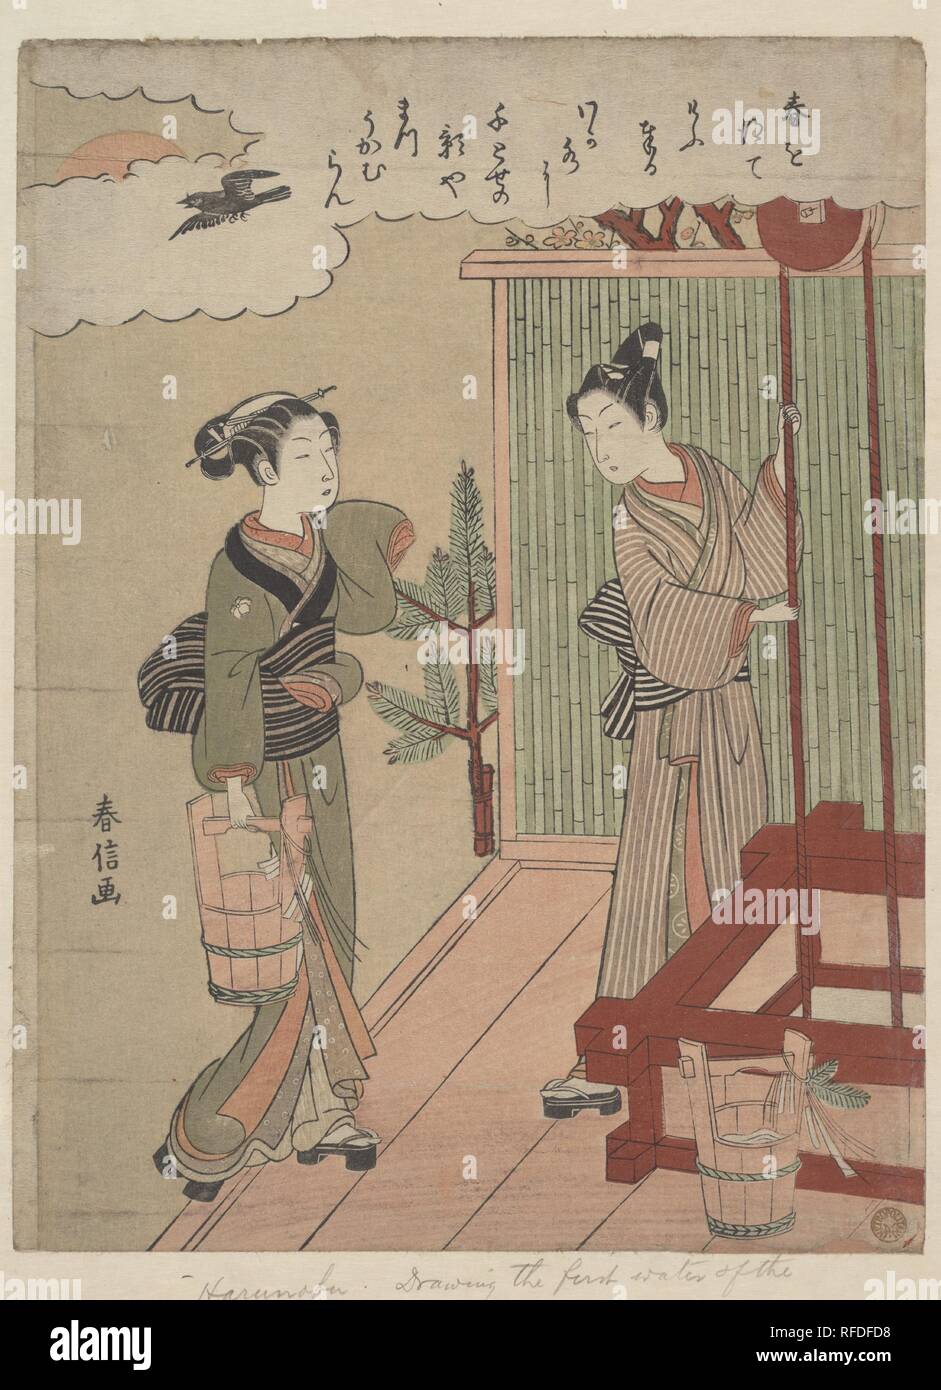 Disegnare la prima acqua del nuovo anno. Artista: Suzuki Harunobu (giapponese, 1725-1770). Cultura: il Giappone. Dimensioni: 11 1/4 x 8 1/2 in. (28,6 x 21,6 cm). Data: ca. 1769-70. Simboli della molla abbondano in questo poema. Una coppia giovane richiama l 'acqua prima del nuovo anno" (wakamizu) in tazze decorate; pine alberelli sedere alla porta, e fiori di susina scoppiò in fiore. La scena anche le chiamate alla mente un episodio dal decimo secolo i racconti di Ise (Ise monogatari) noto come "ben cordolo,' in cui giovani innamorati ricordano misurando le loro altezze dal bene come i bambini. Esso legge Haru o hete kyo tate Foto Stock